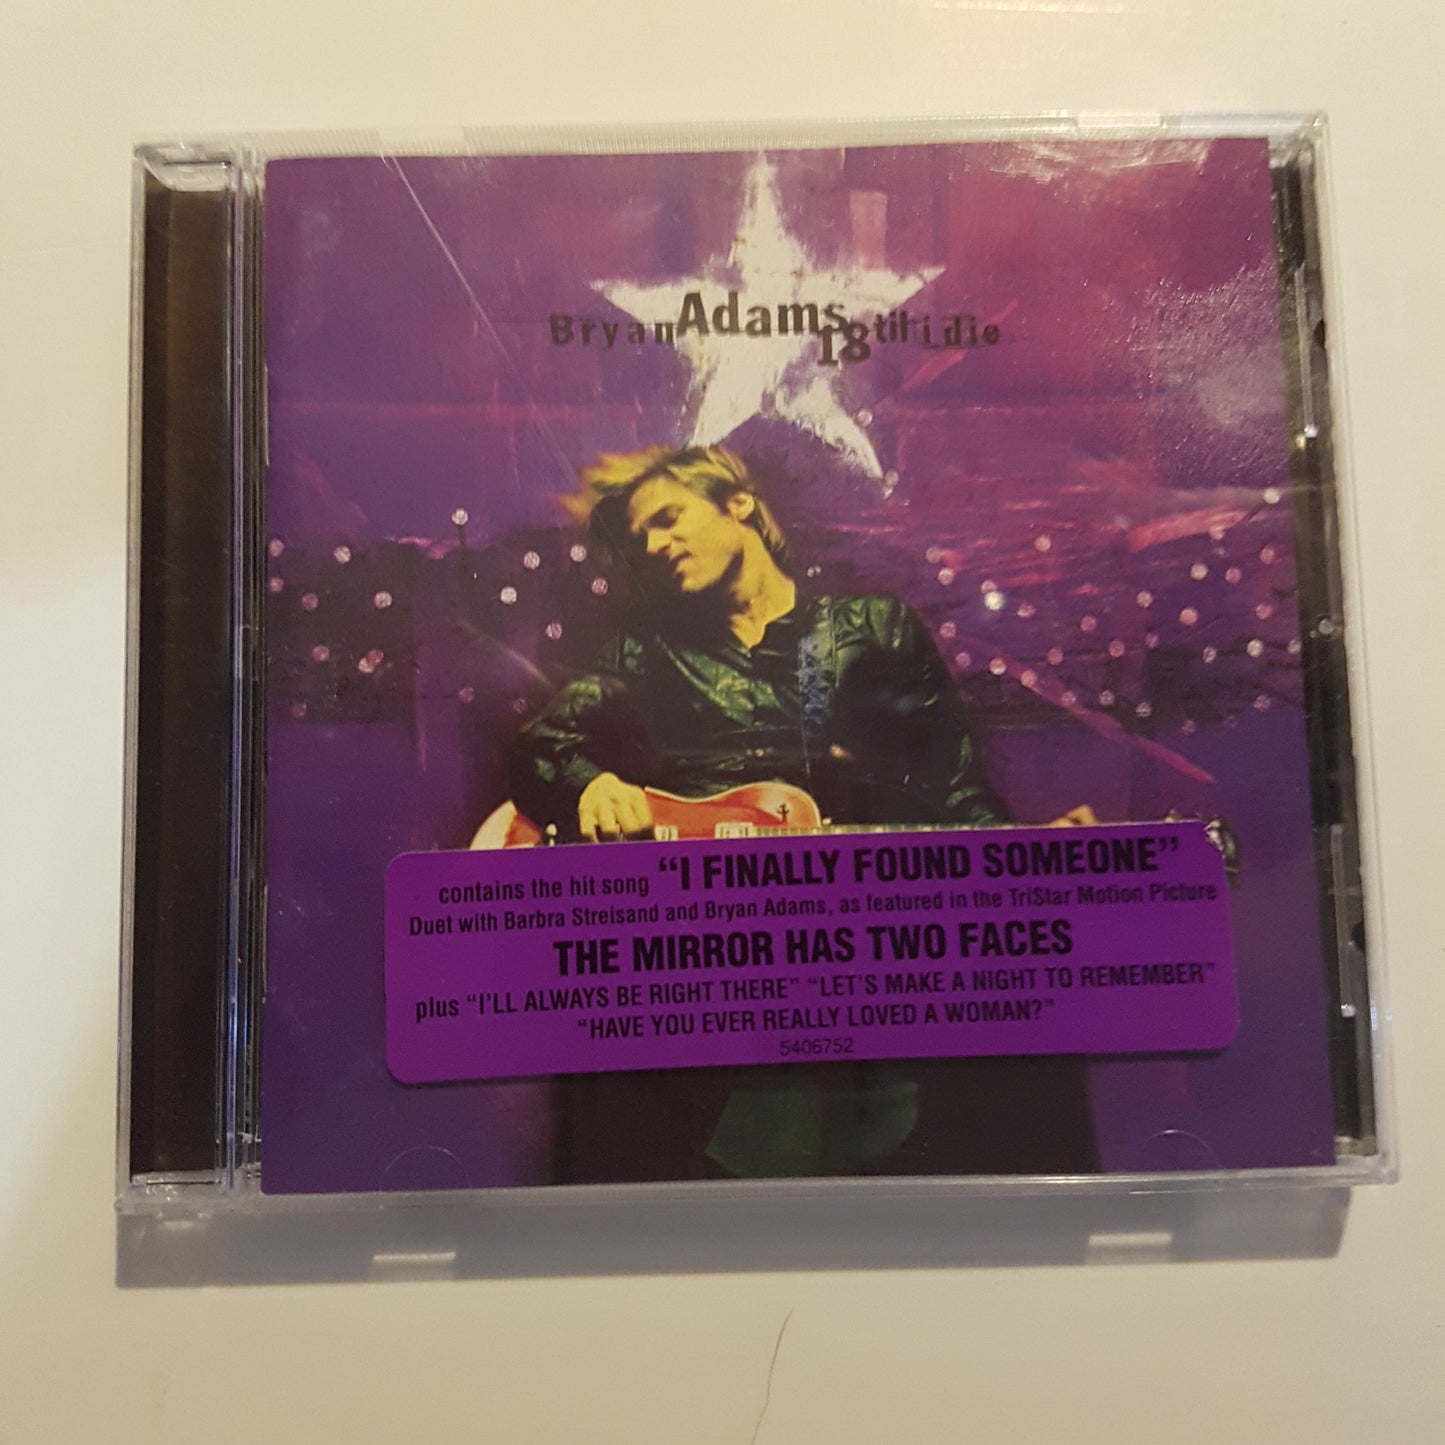 Bryan Adams, 18 Til I Die (1CD)